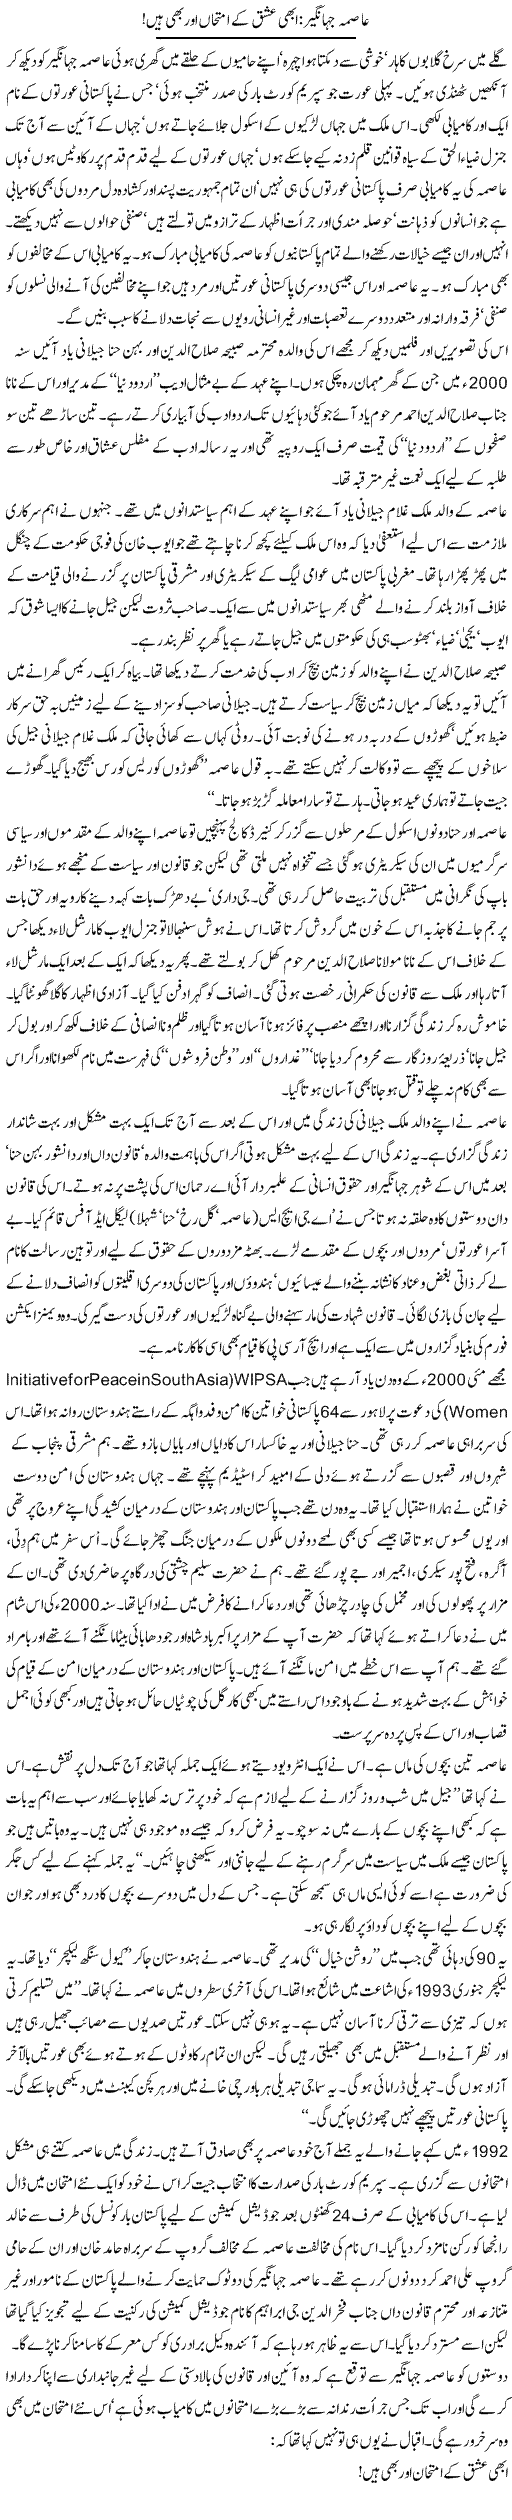 Asma Jahangir Express Column Zahida Hina 31 October 2010